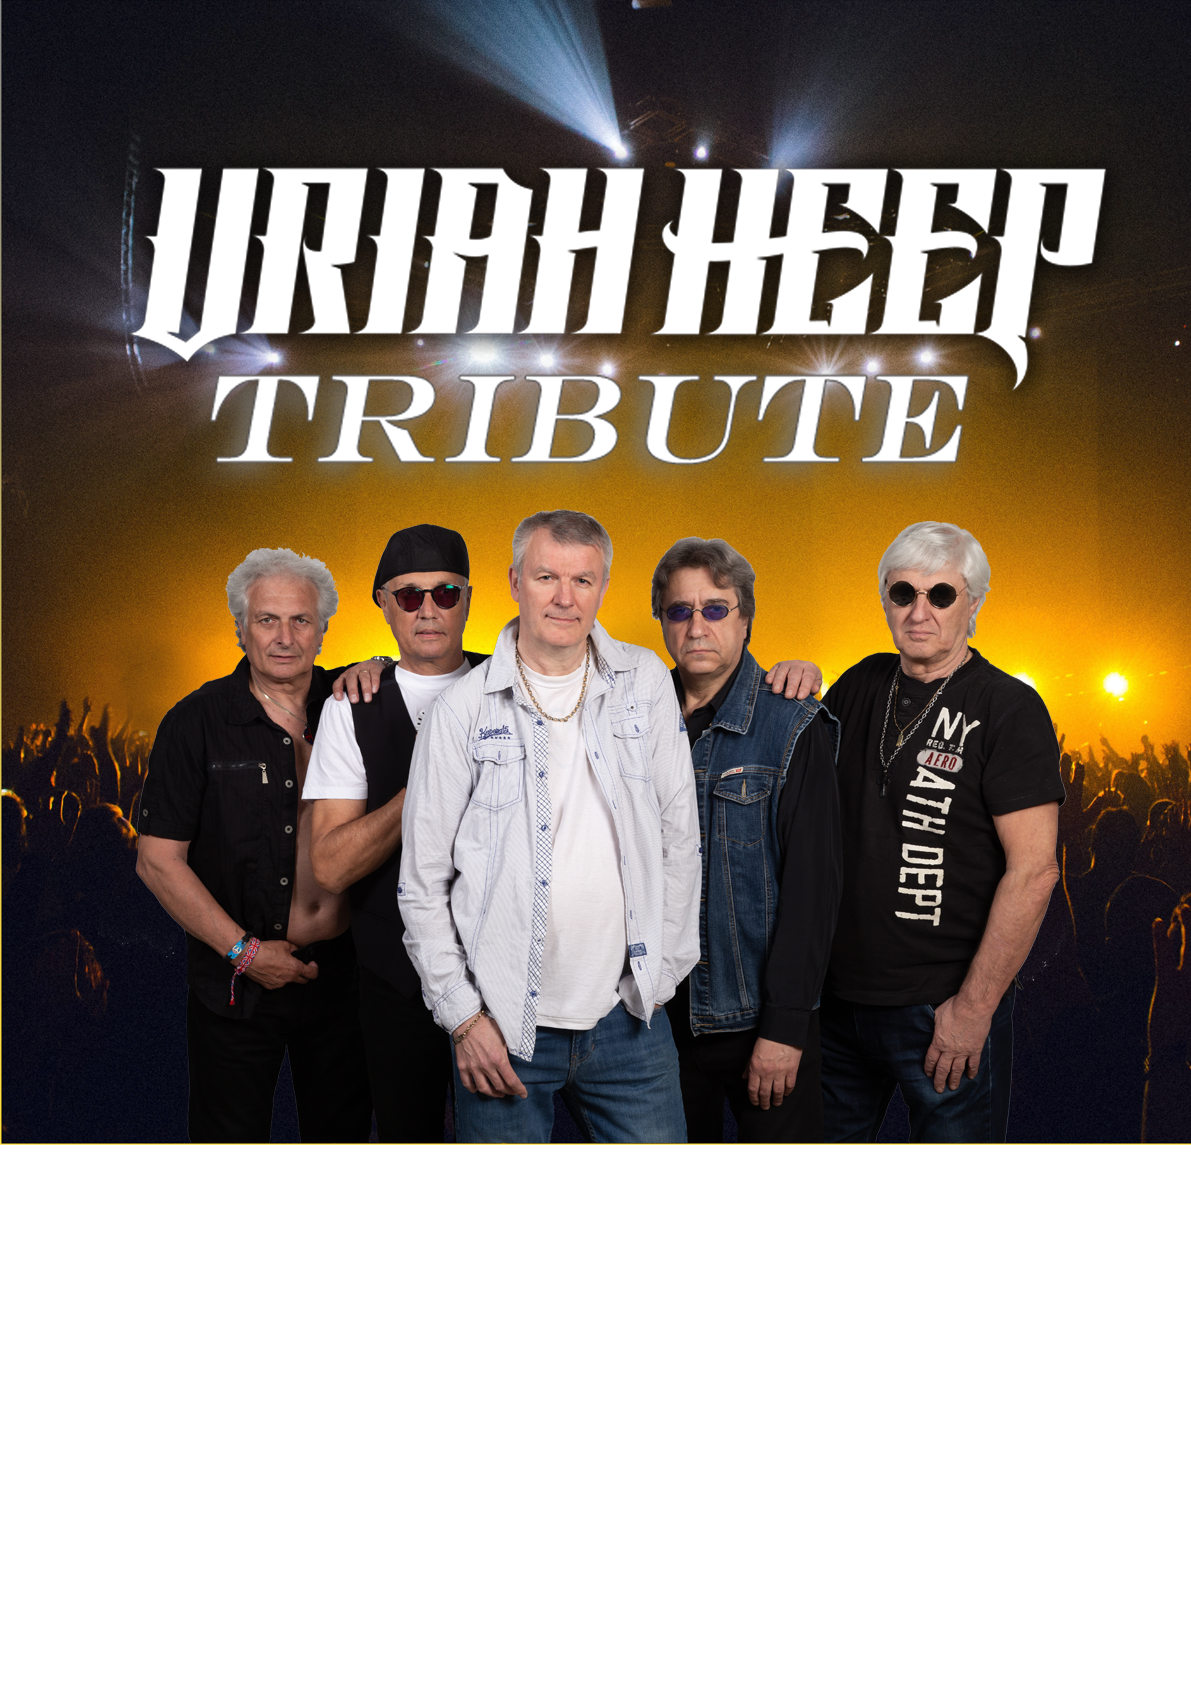 Plakát A2 Uriah Heep Revival Tribute pro pořadatele k vytištění